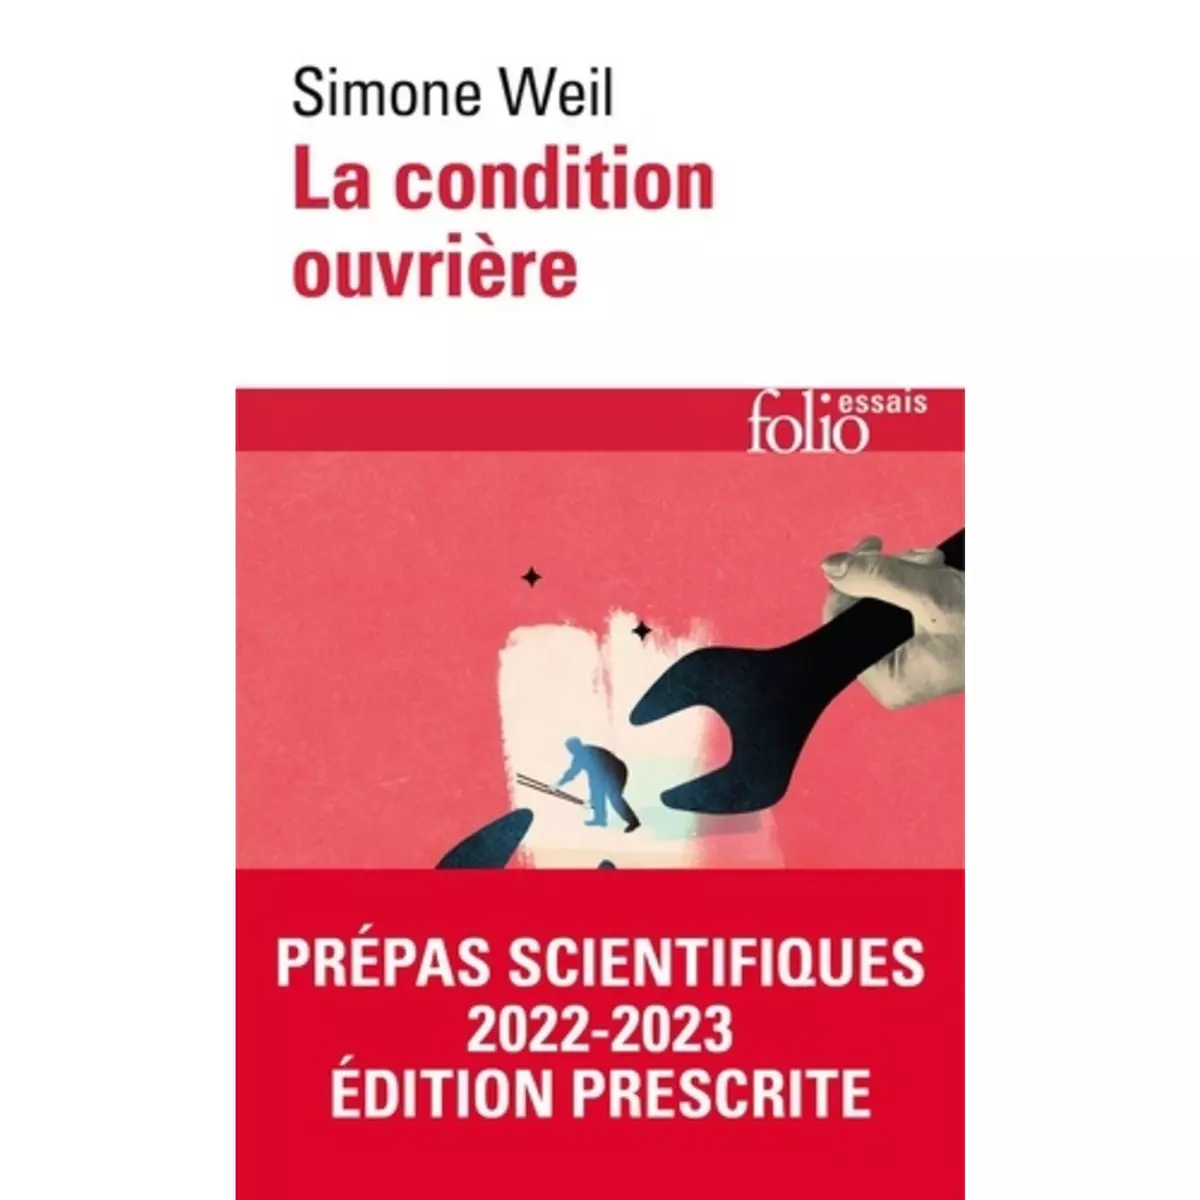  LA CONDITION OUVRIERE, Weil Simone